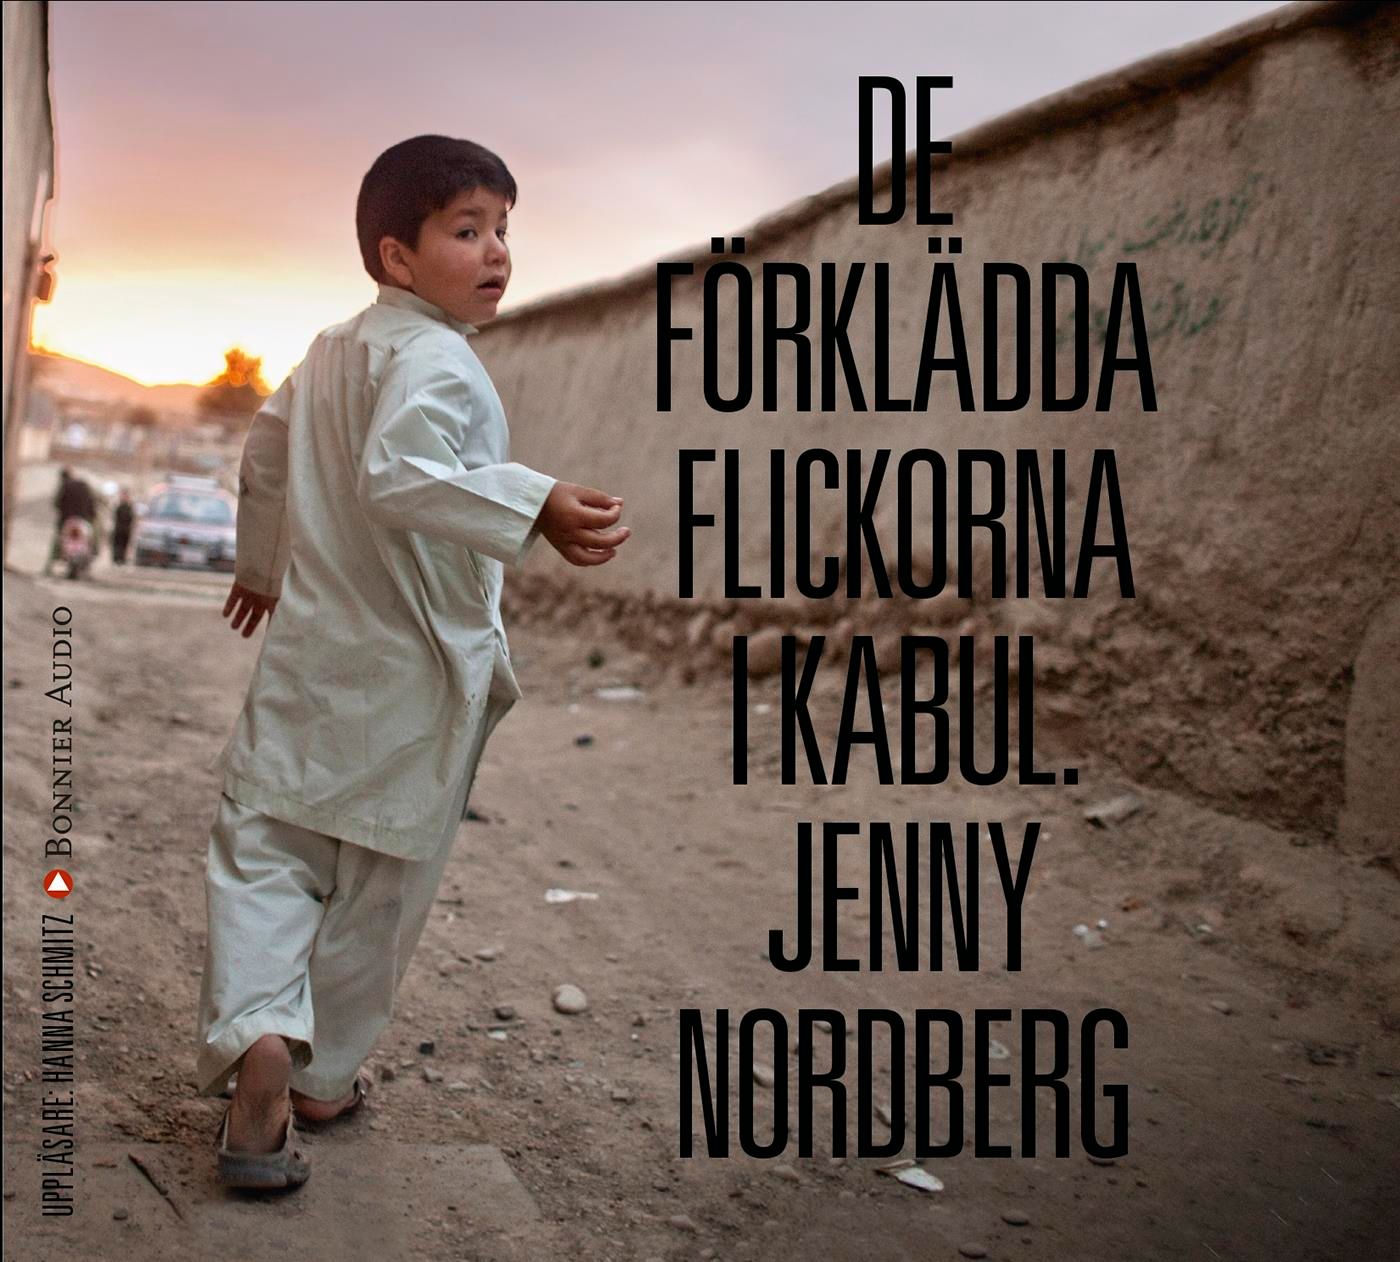 De förklädda flickorna i Kabul, audiobook by Jenny Nordberg